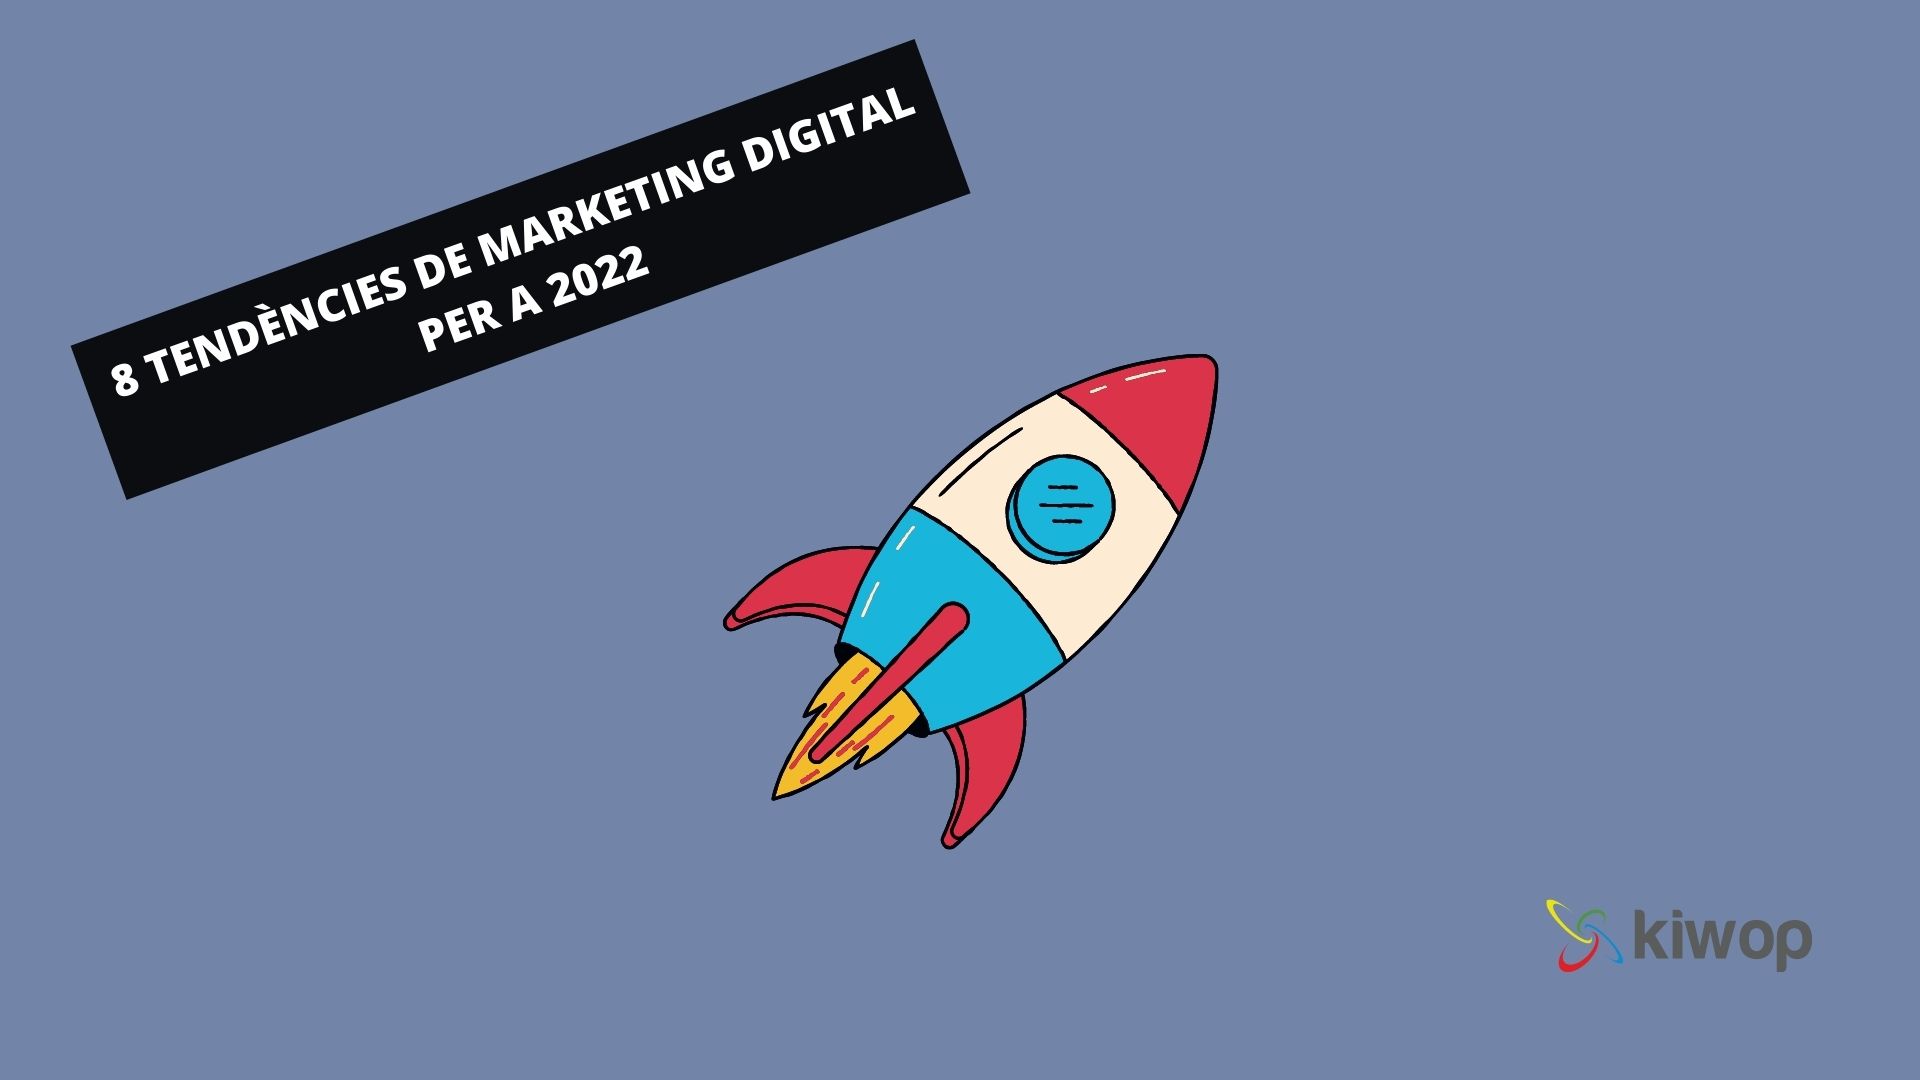 8 tendències de marketing digital per a 2022